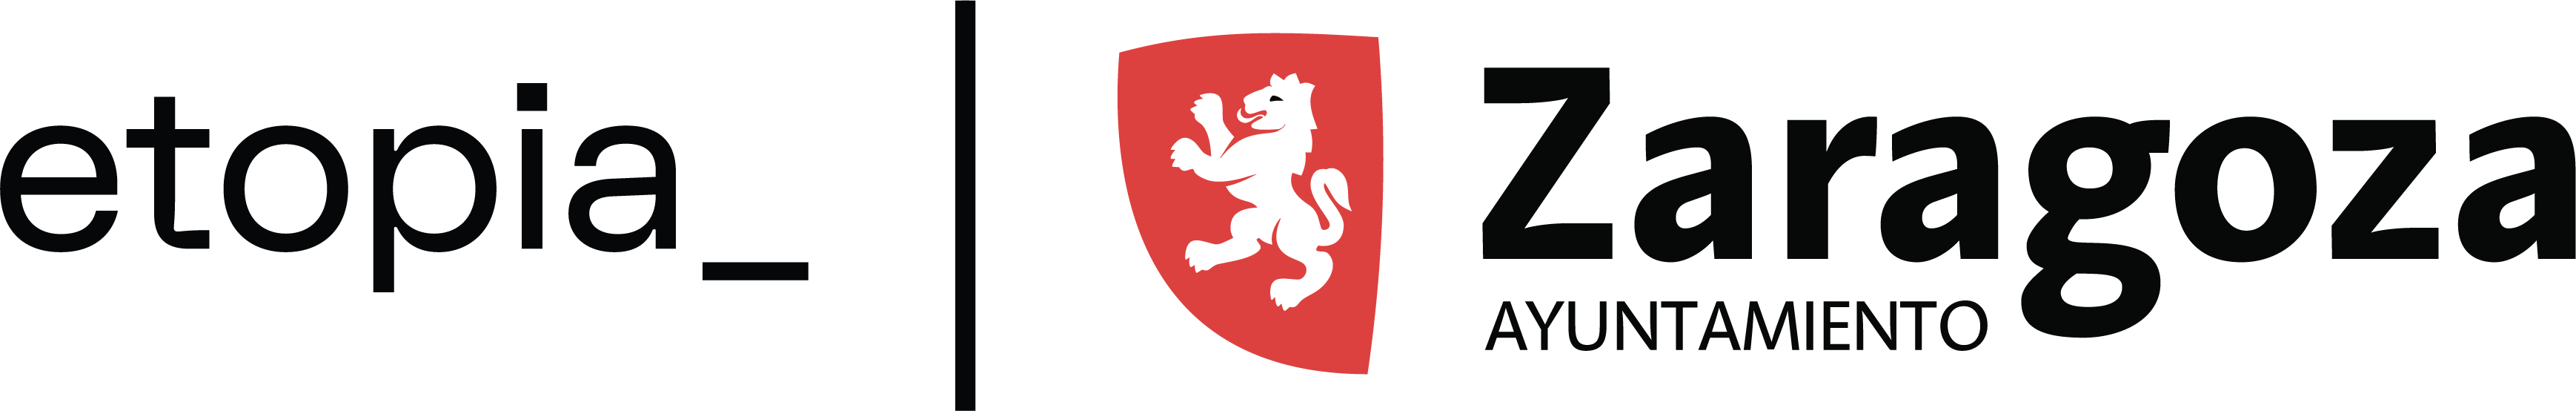 logo de Etopía y del Ayuntamiento de Zaragoza